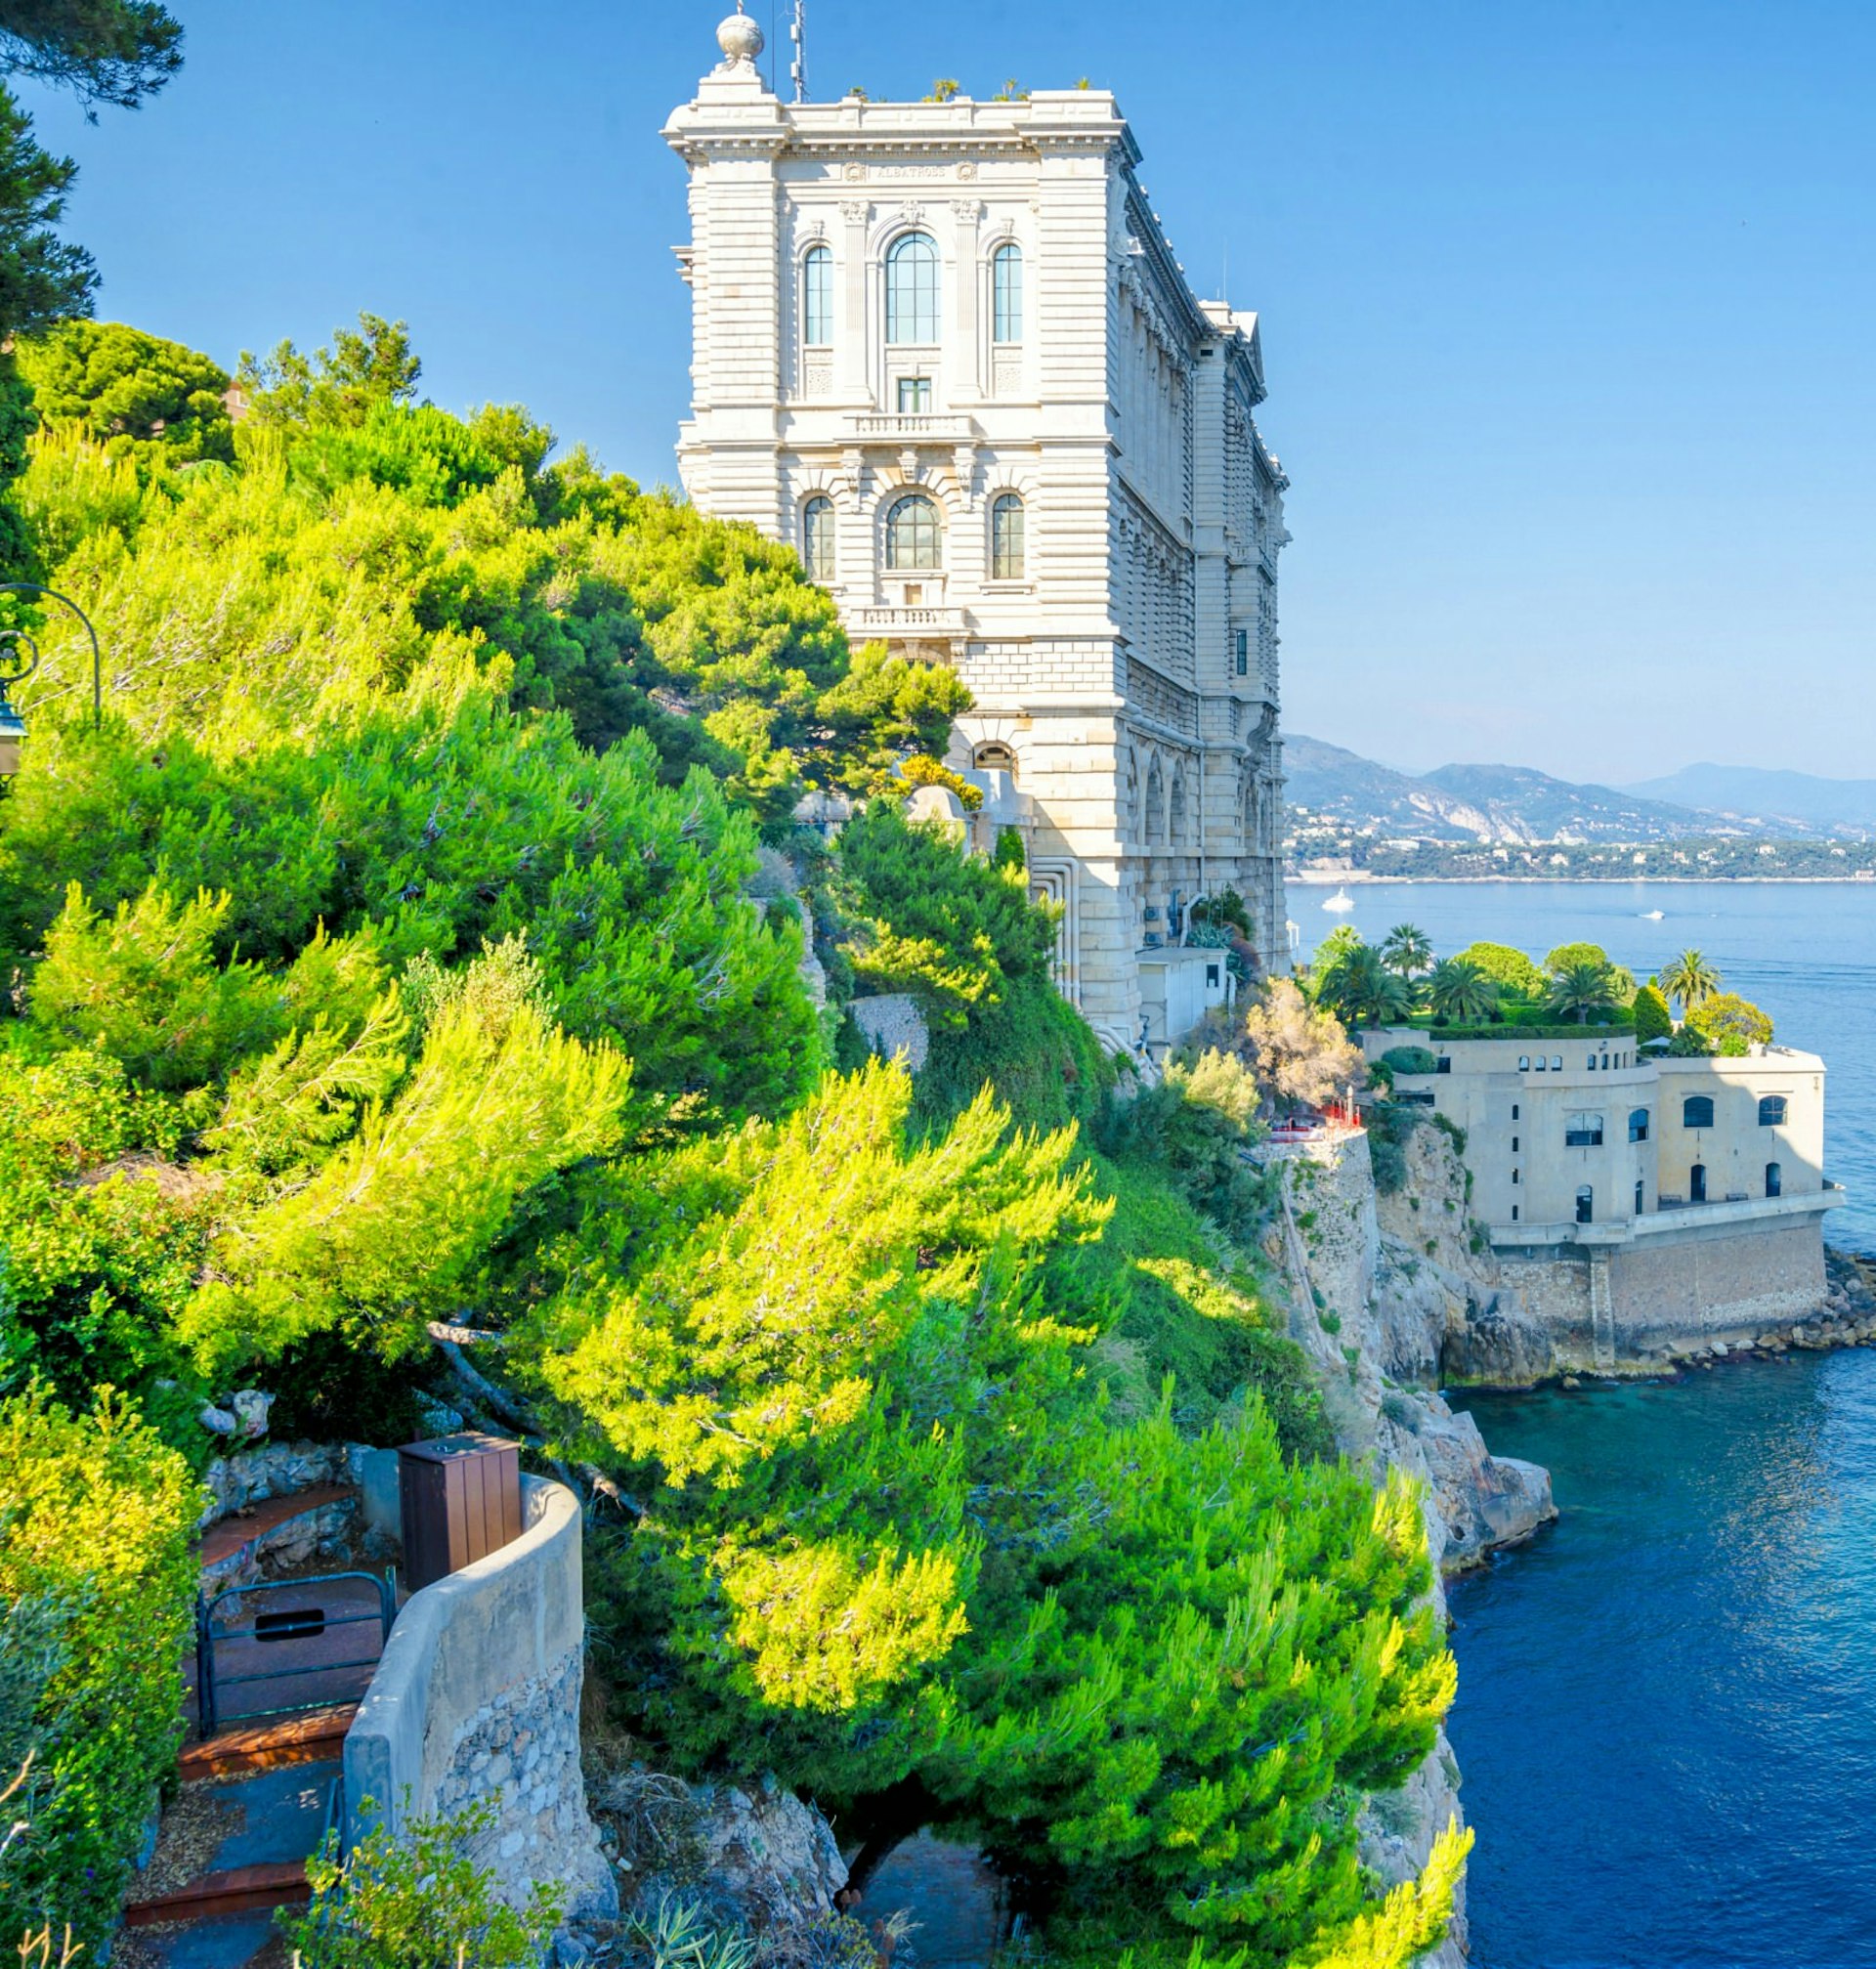 The Oceanographic Museum of Monaco rising perpendicular from the sea